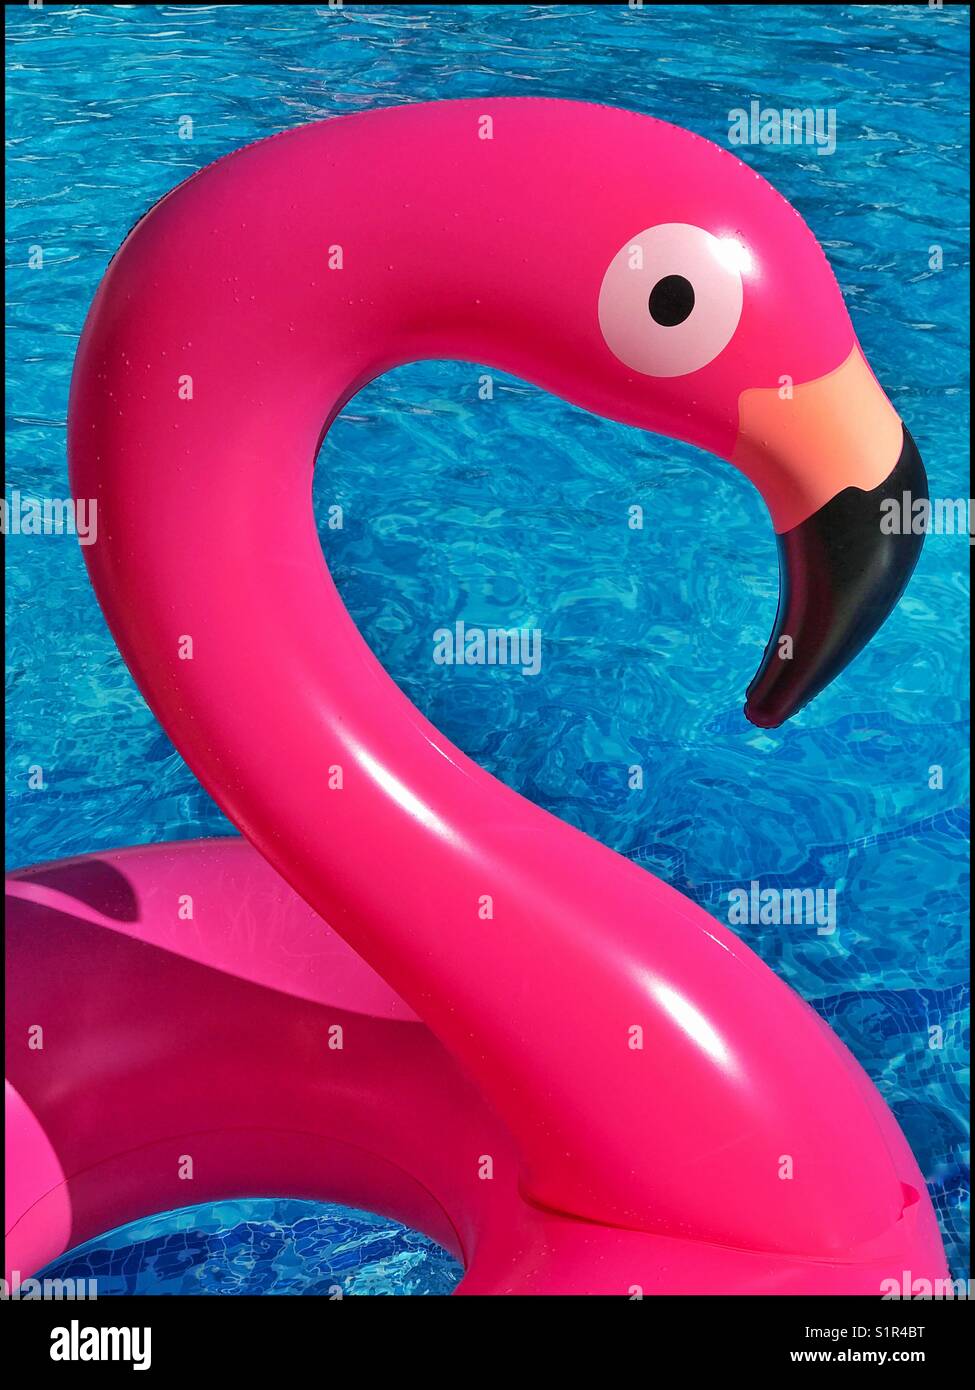 Ein Kunststoff, aufblasbare Flamingo schwebt in einen Pool. Ein grafisches Bild, das zaubert Bilder lustige Zeiten und Sommerurlaub! Foto - © COLIN HOSKINS. Stockfoto